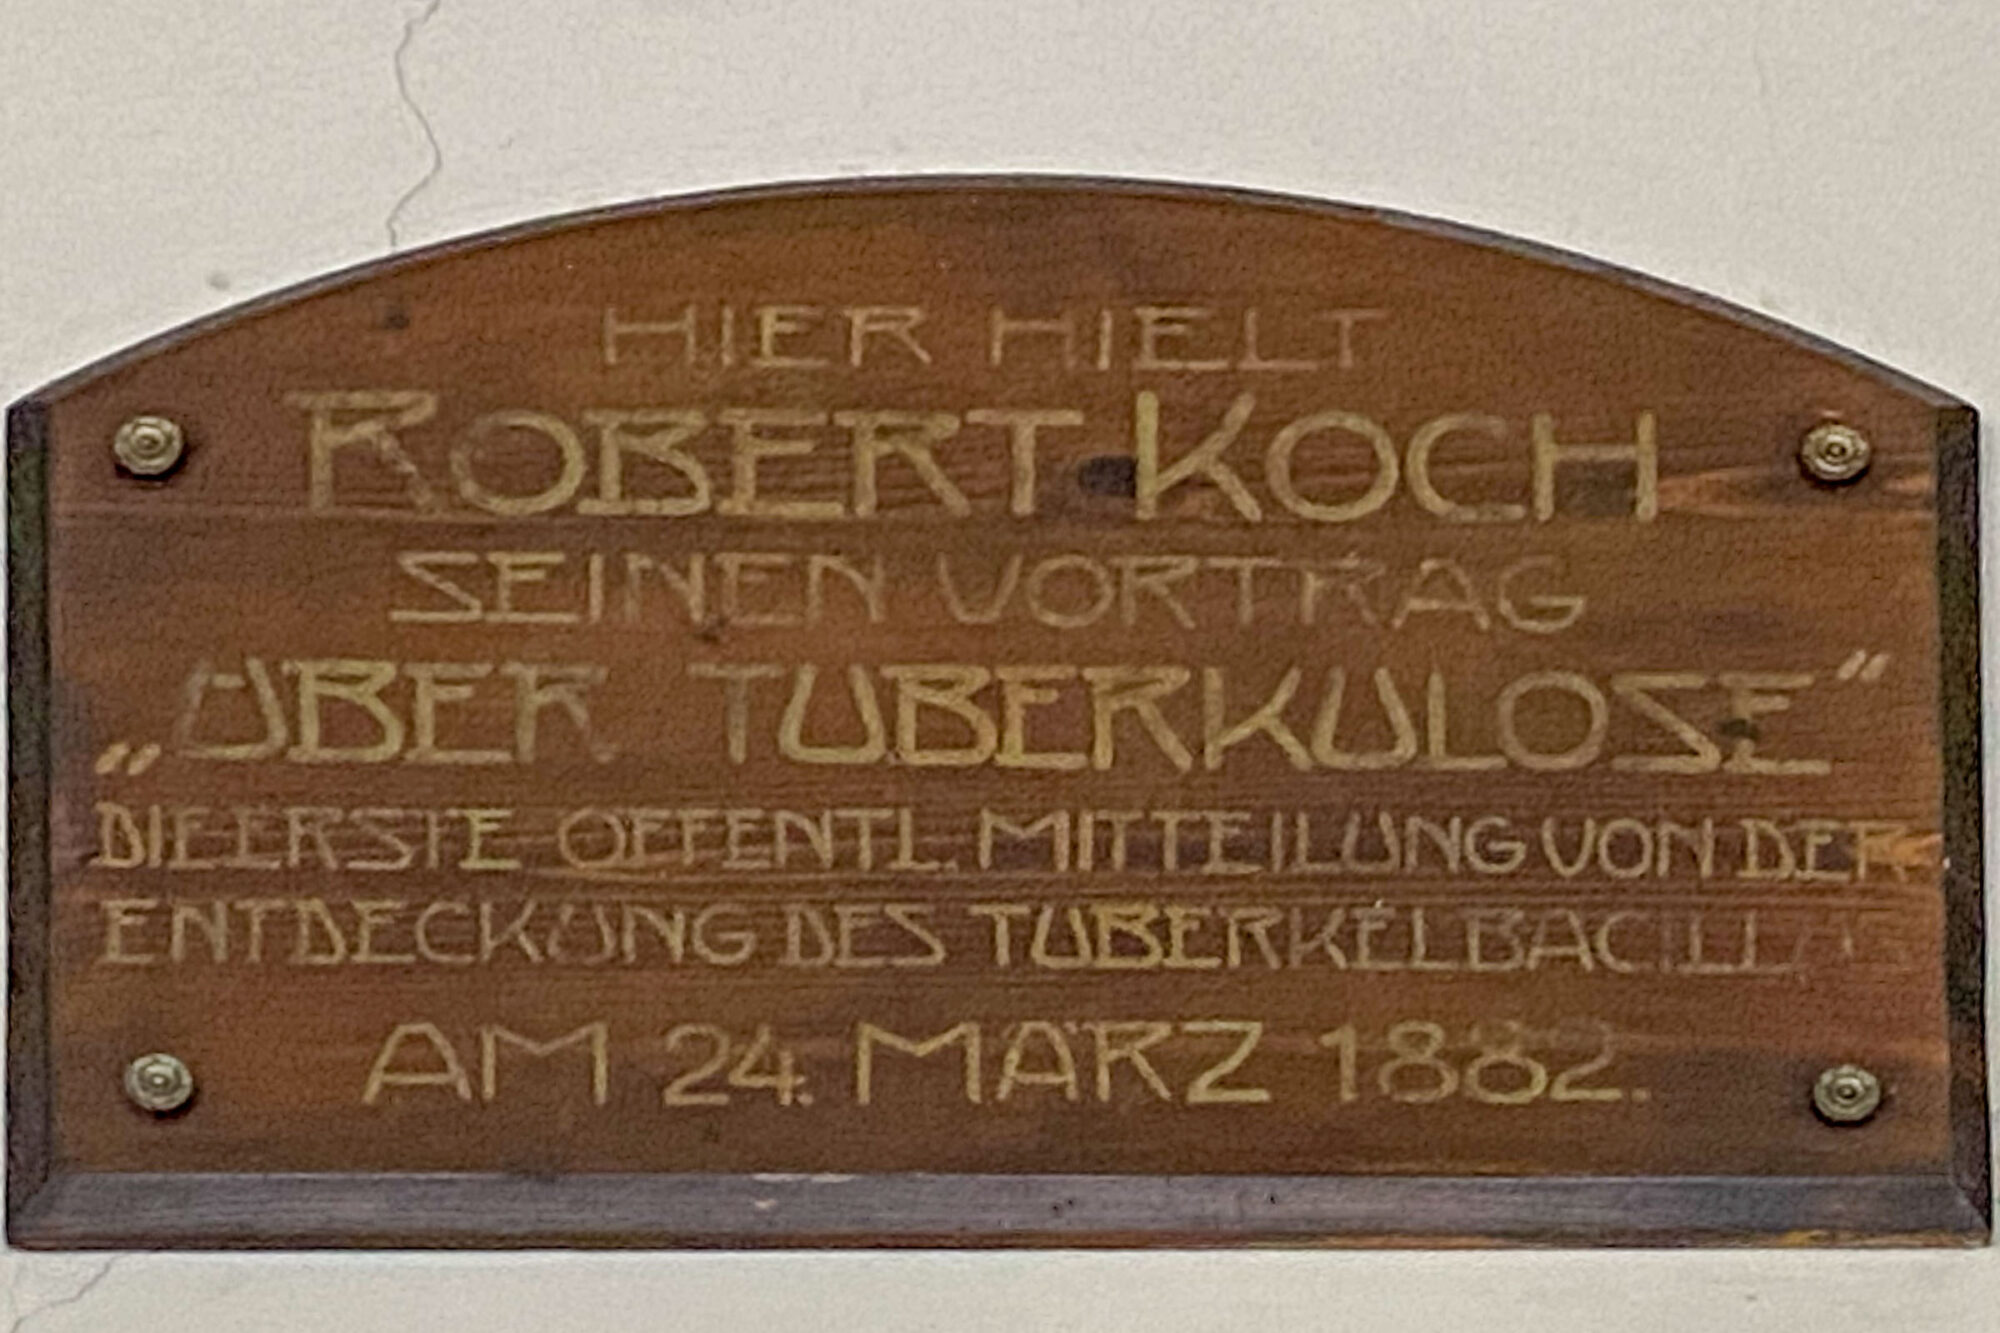 Robert-Koch-Forum, Berlin